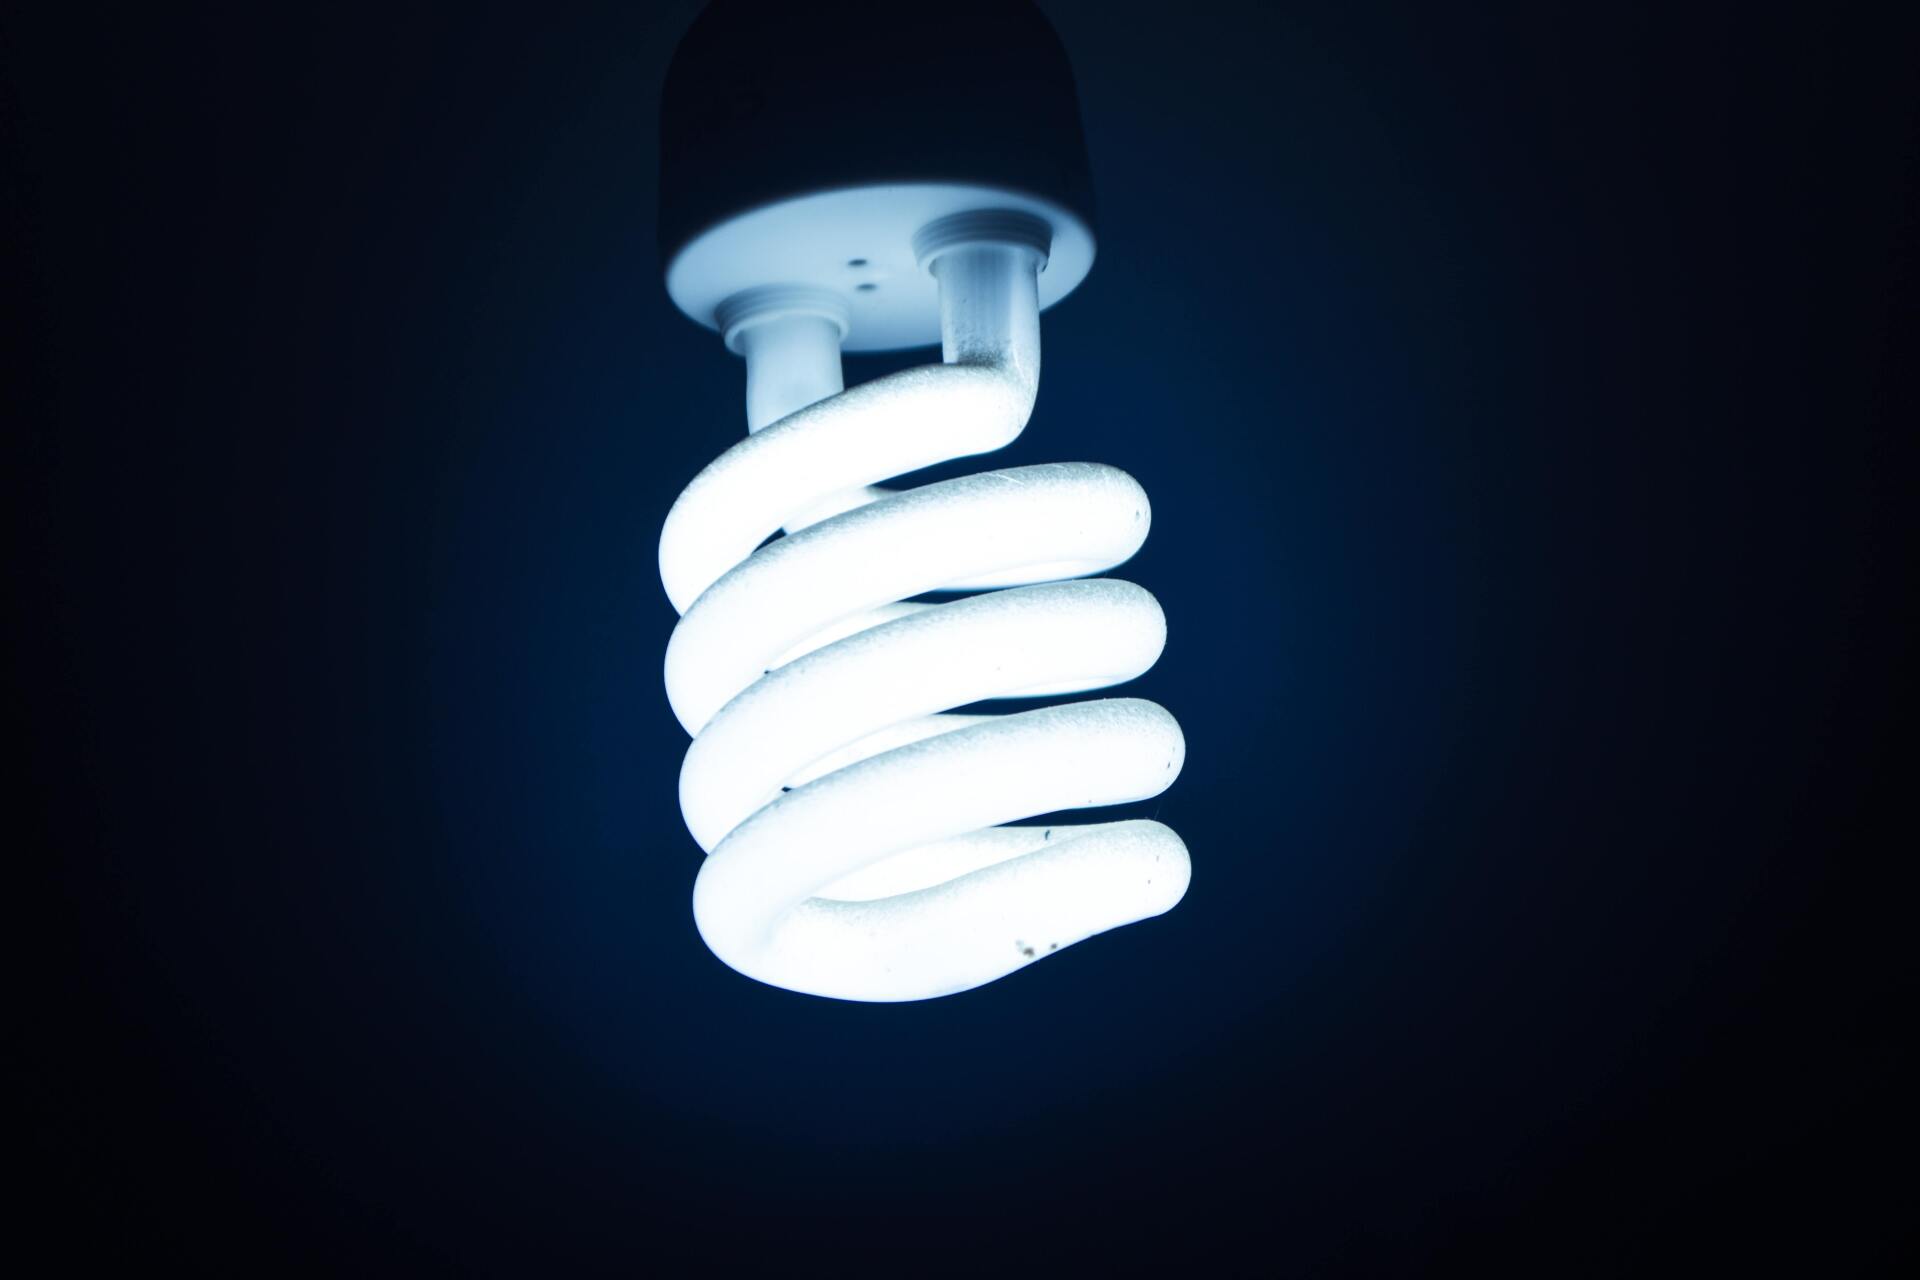 led lights produce light